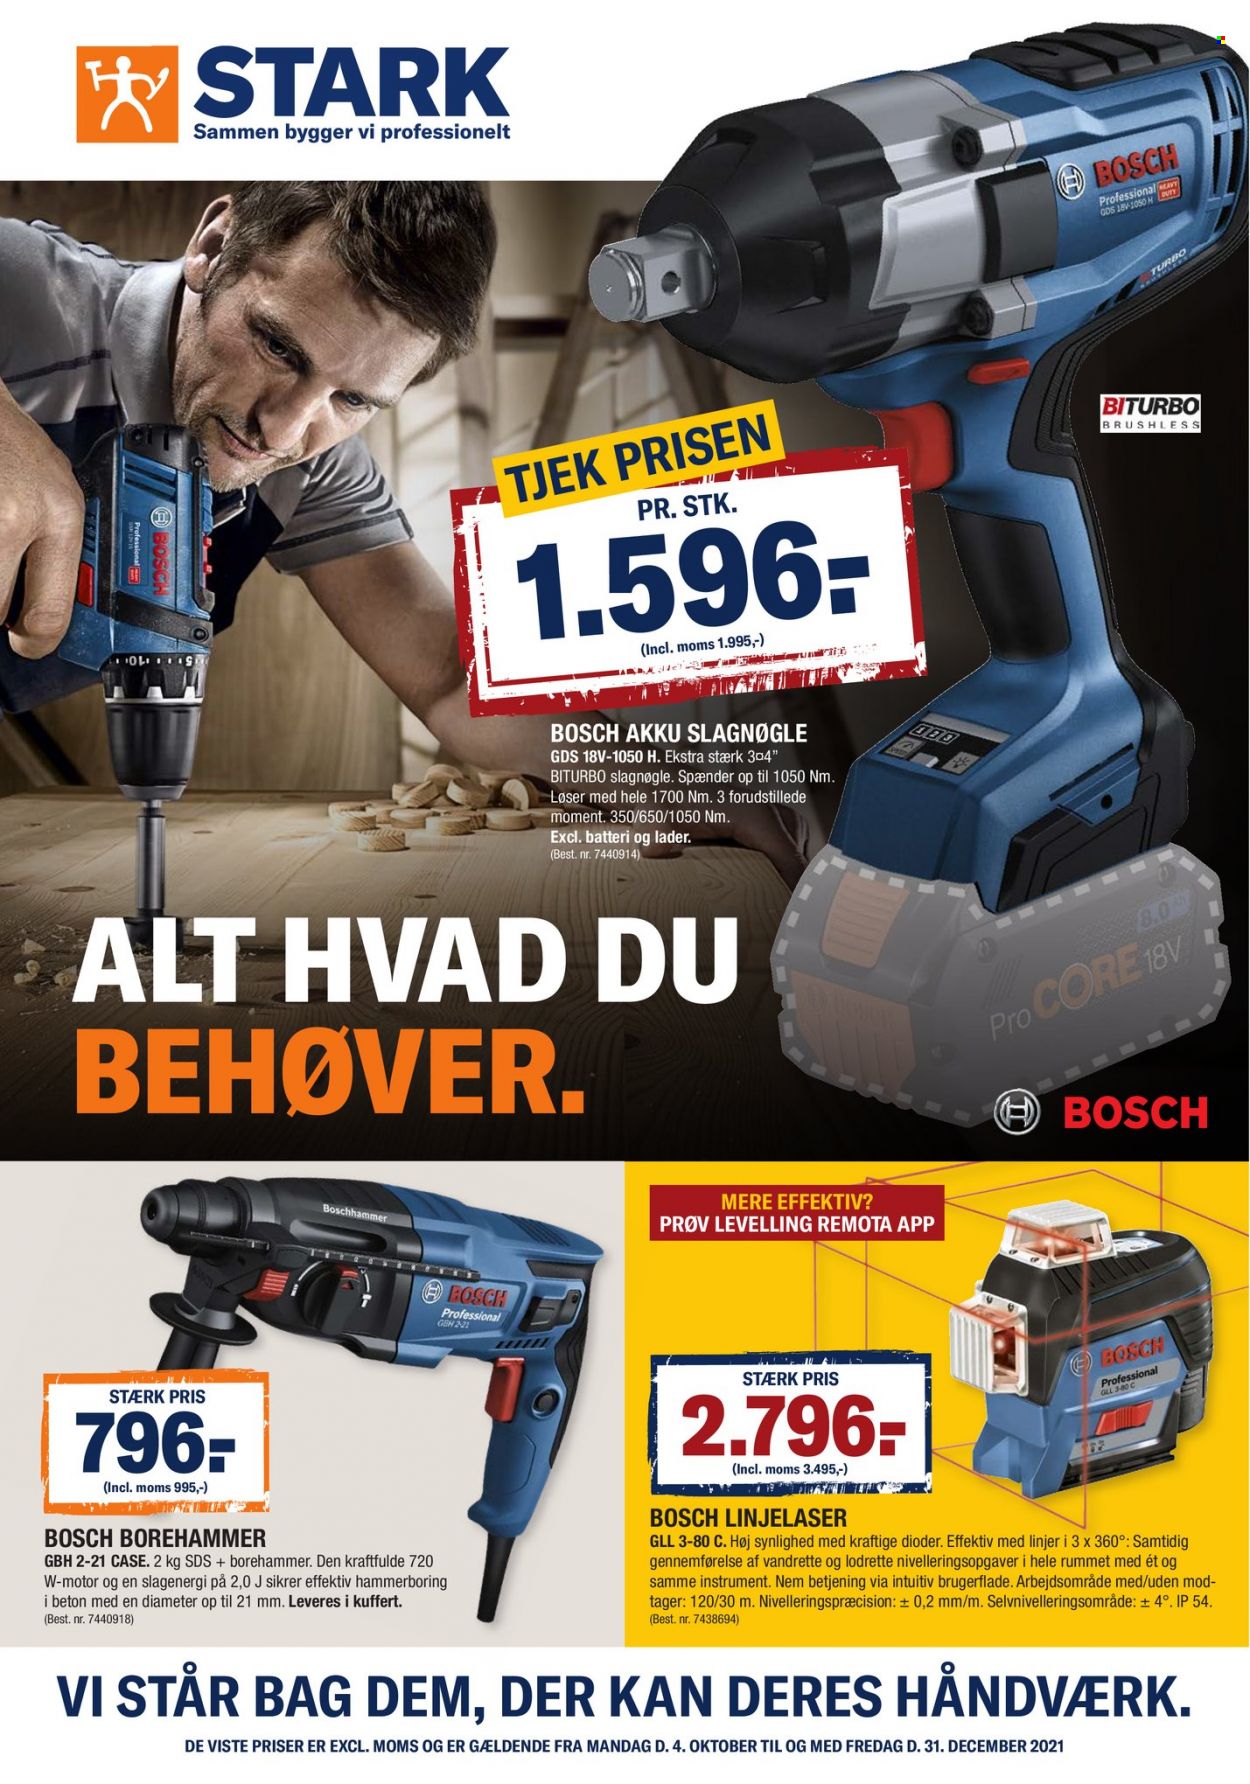 thumbnail - Stark tilbud  - 4.10.2021 - 31.12.2021 - tilbudsprodukter - Bosch, borehammer. Side 1.